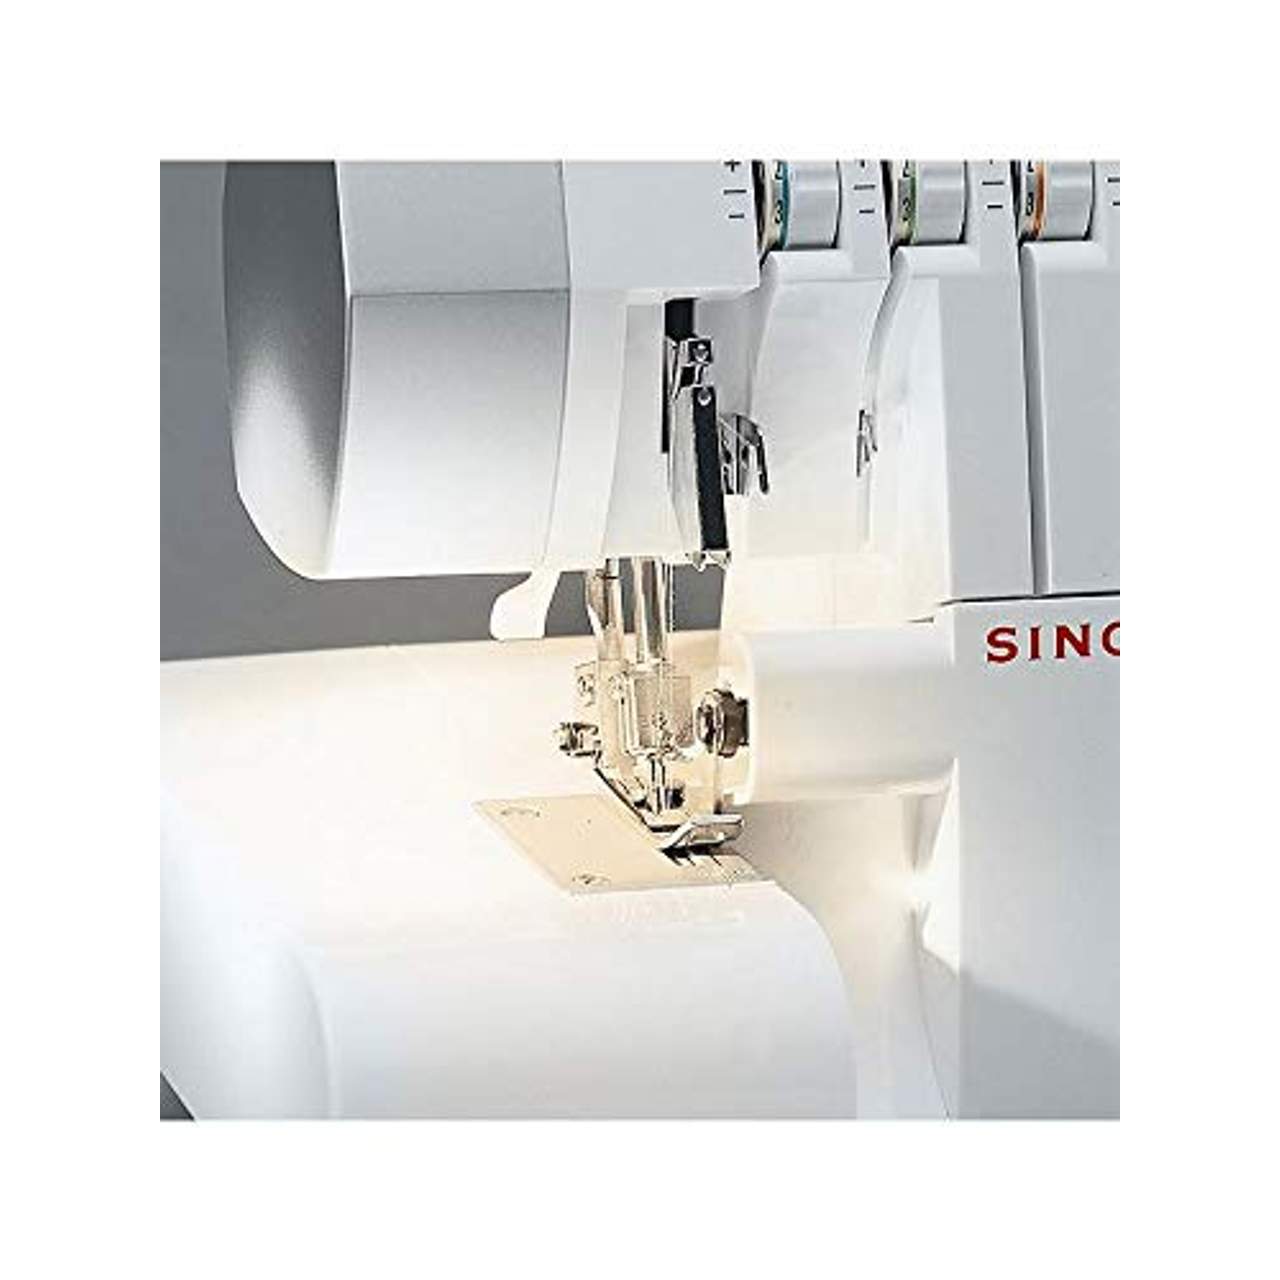 Singer 14SH754 Sewing Machines